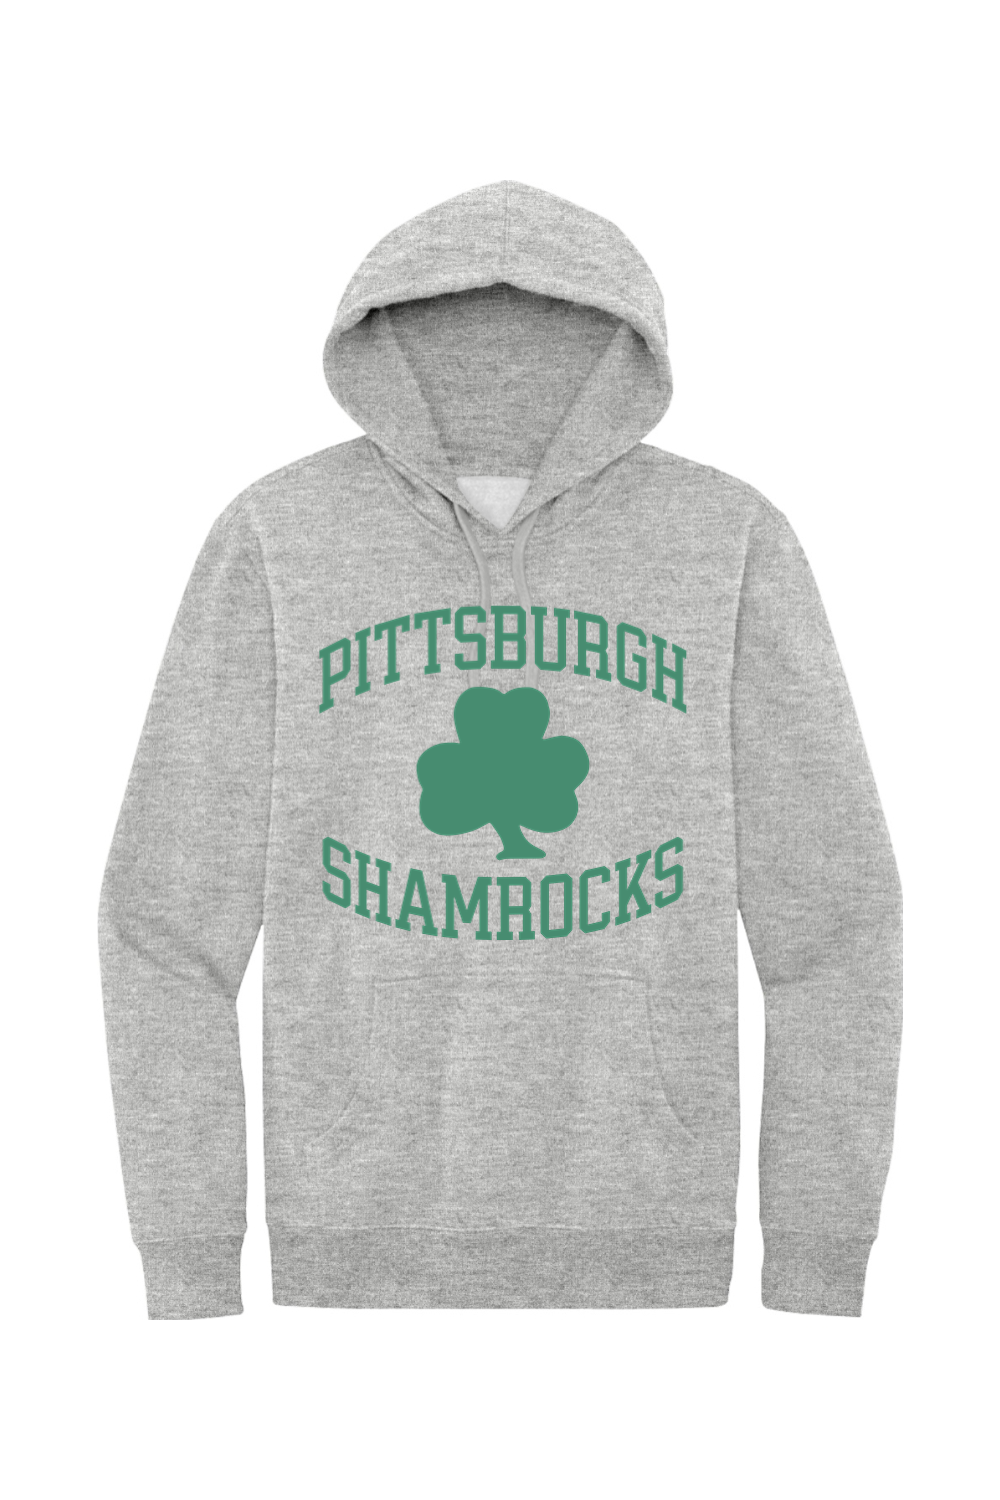 Pittsburgh Shamrocks Hockey - Fleece Hoodie - Yinzylvania